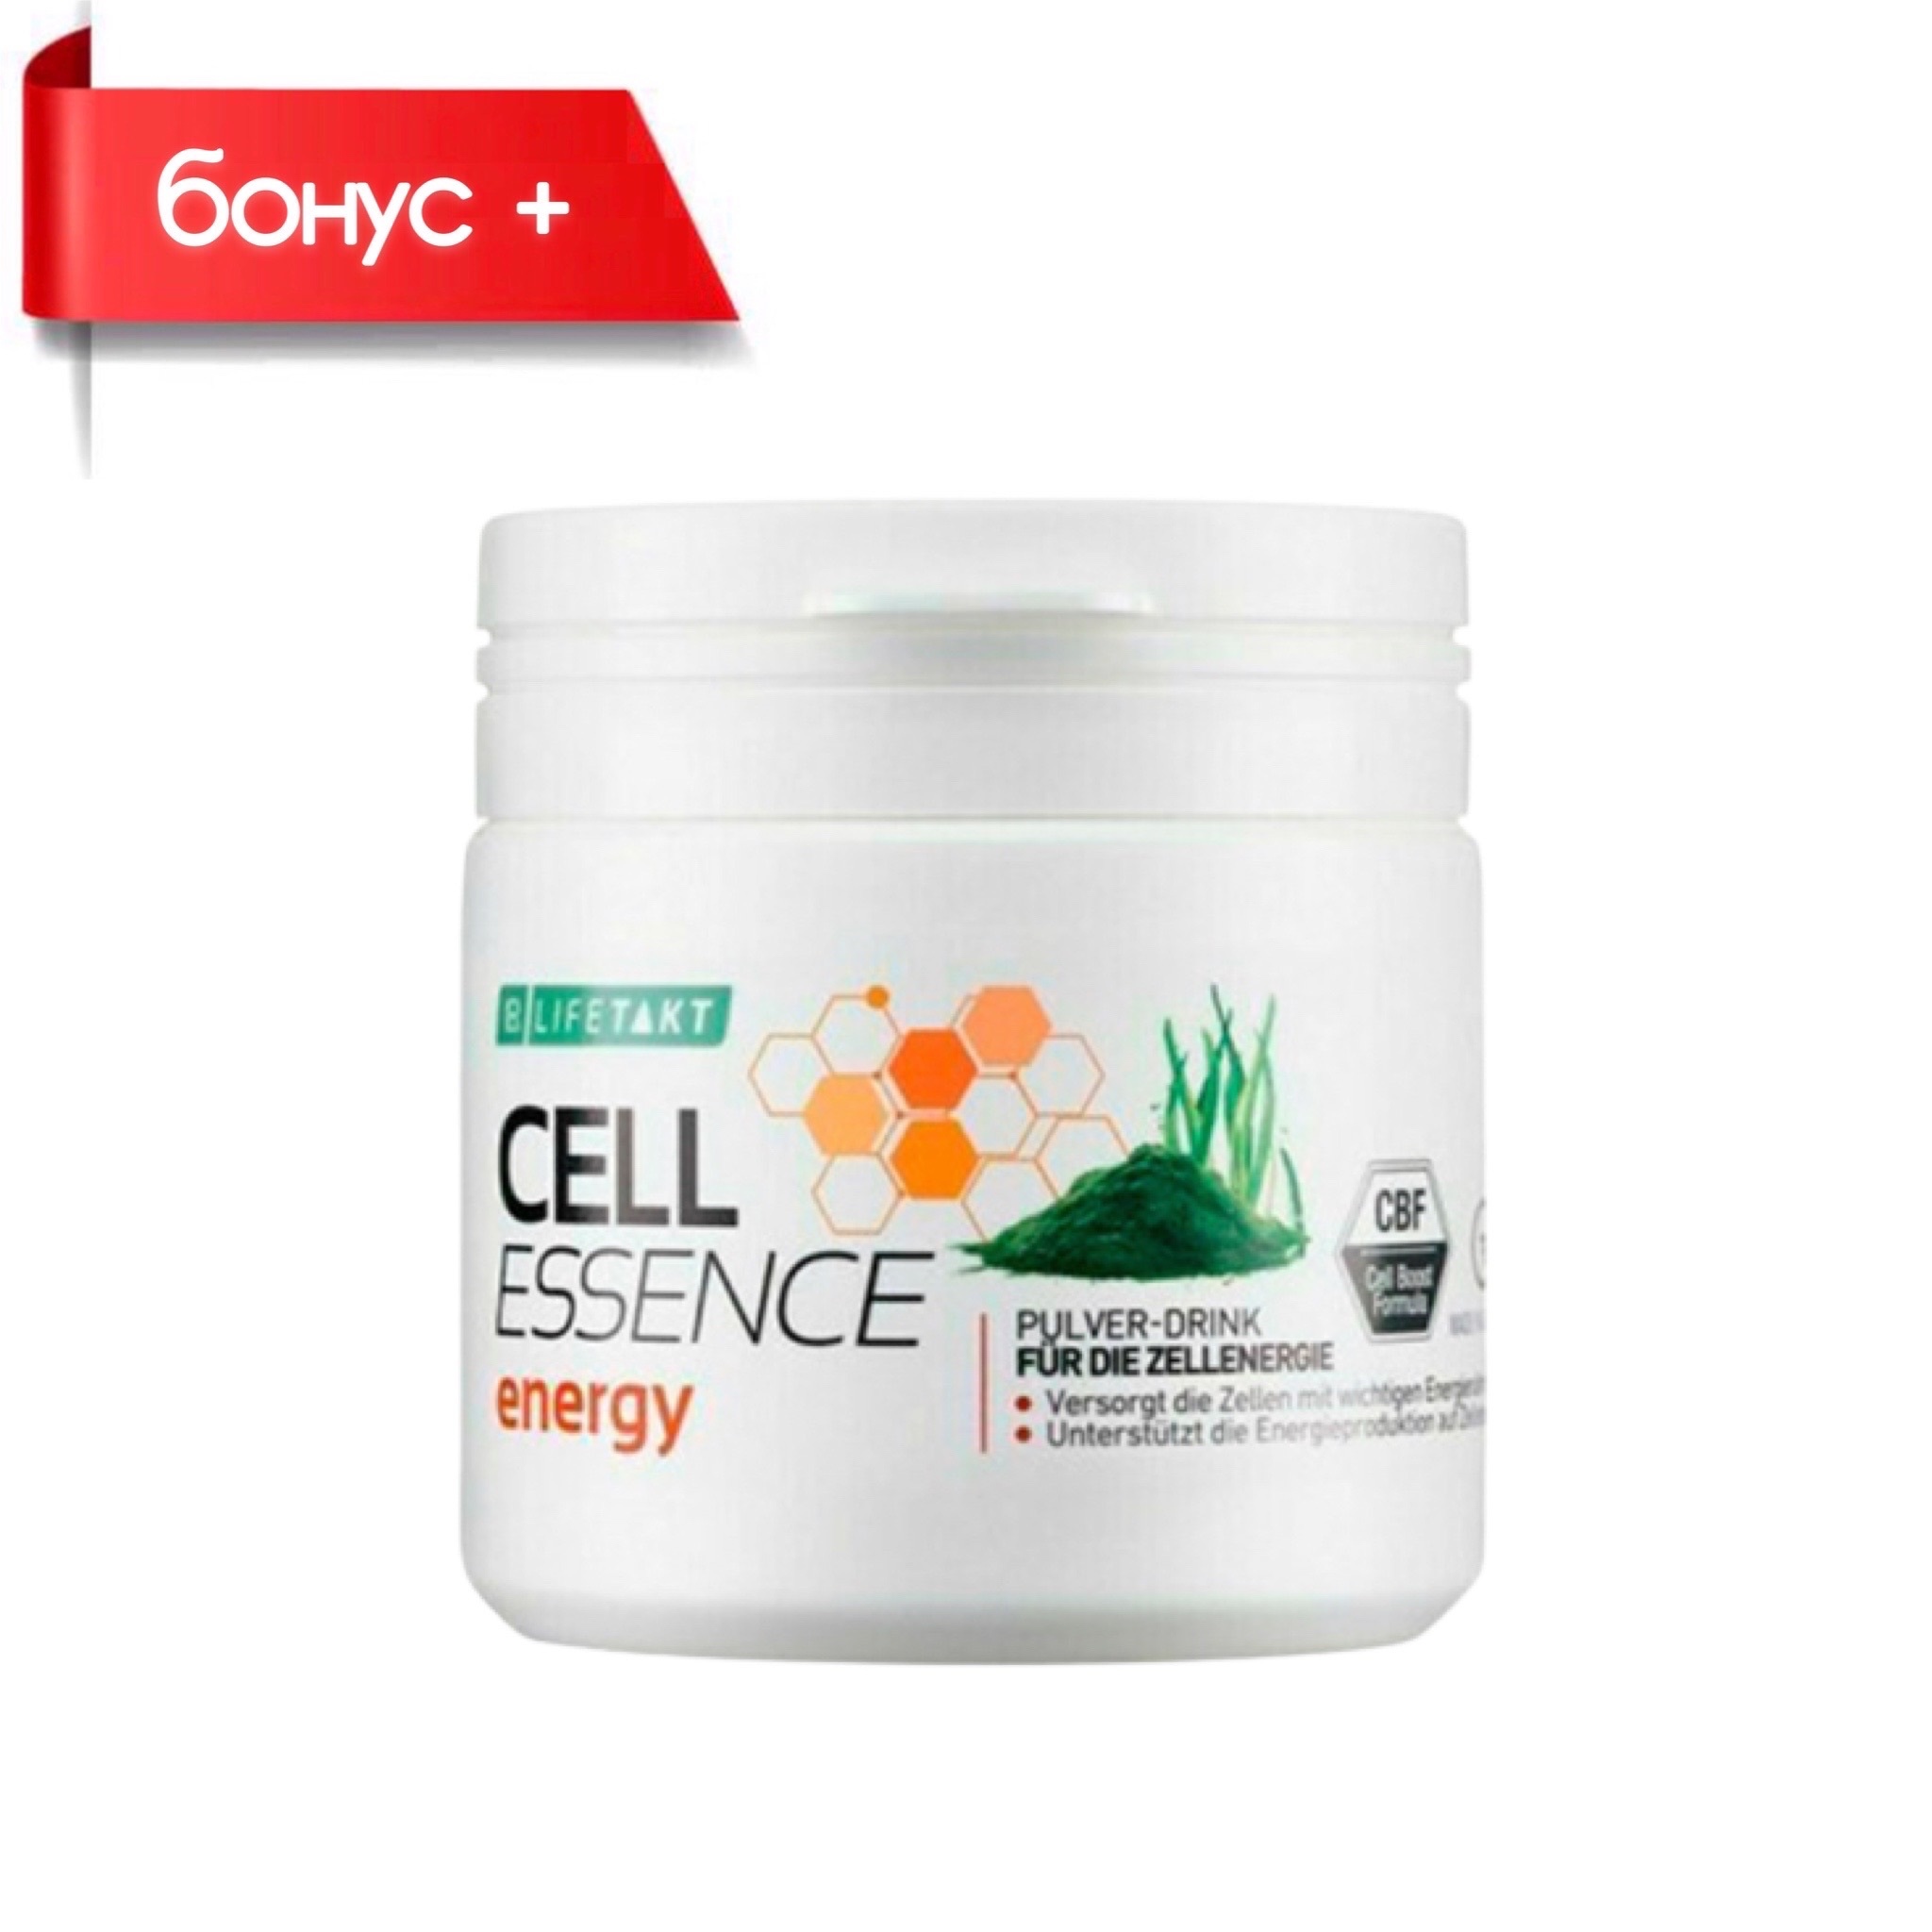 LR LIFETAKT Cell Essence Energy, Селл Эссенс Энергия клеток клеточное питание